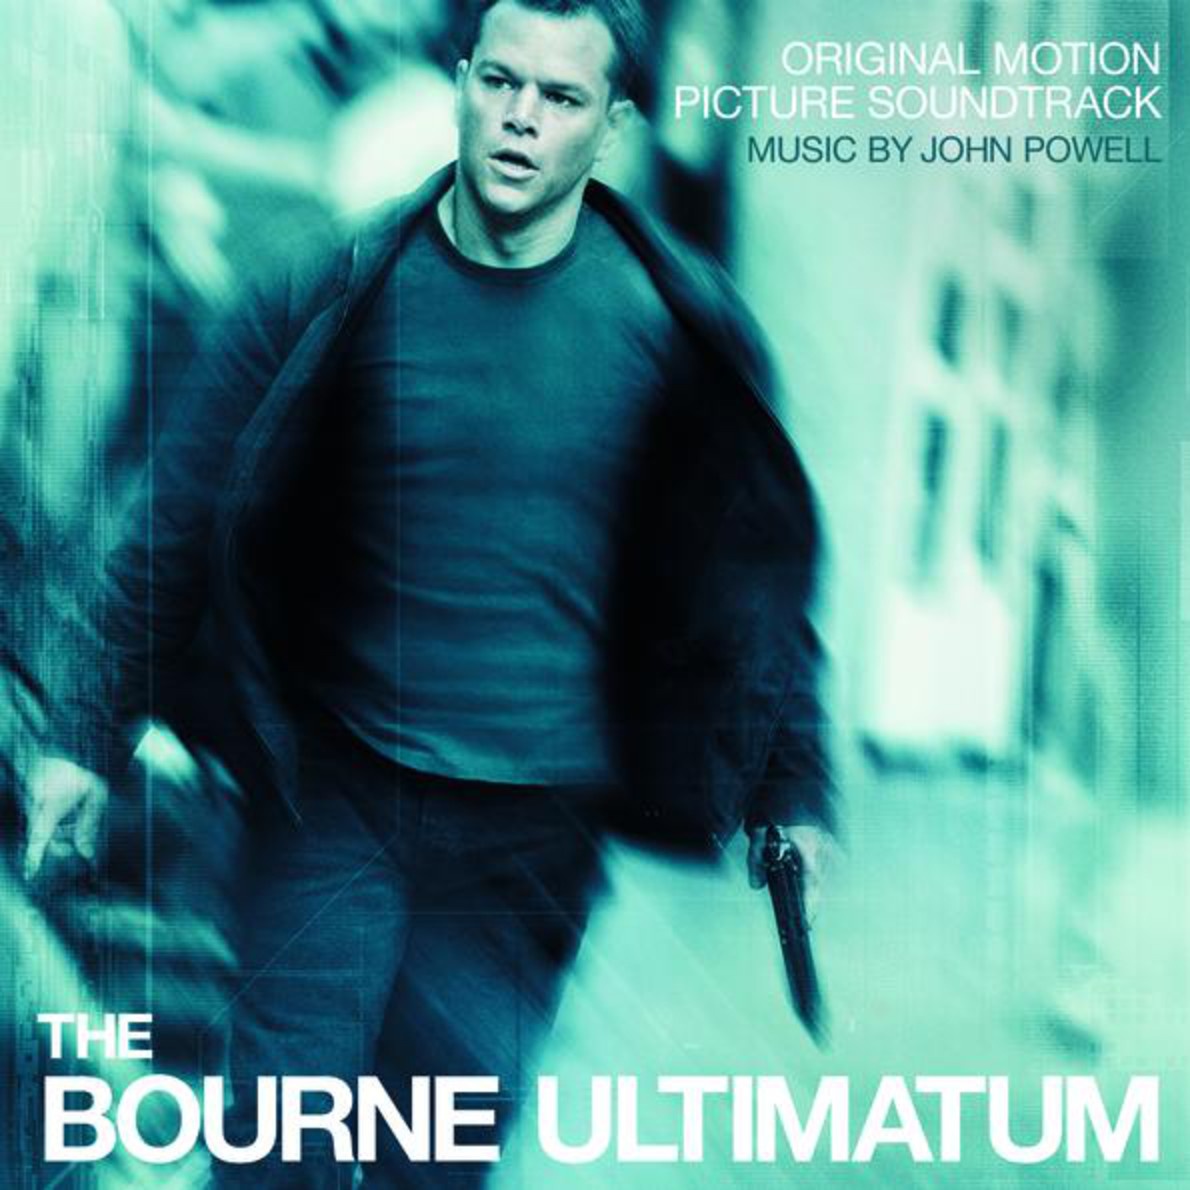 Extreme Ways (Bourne's Ultimatum)